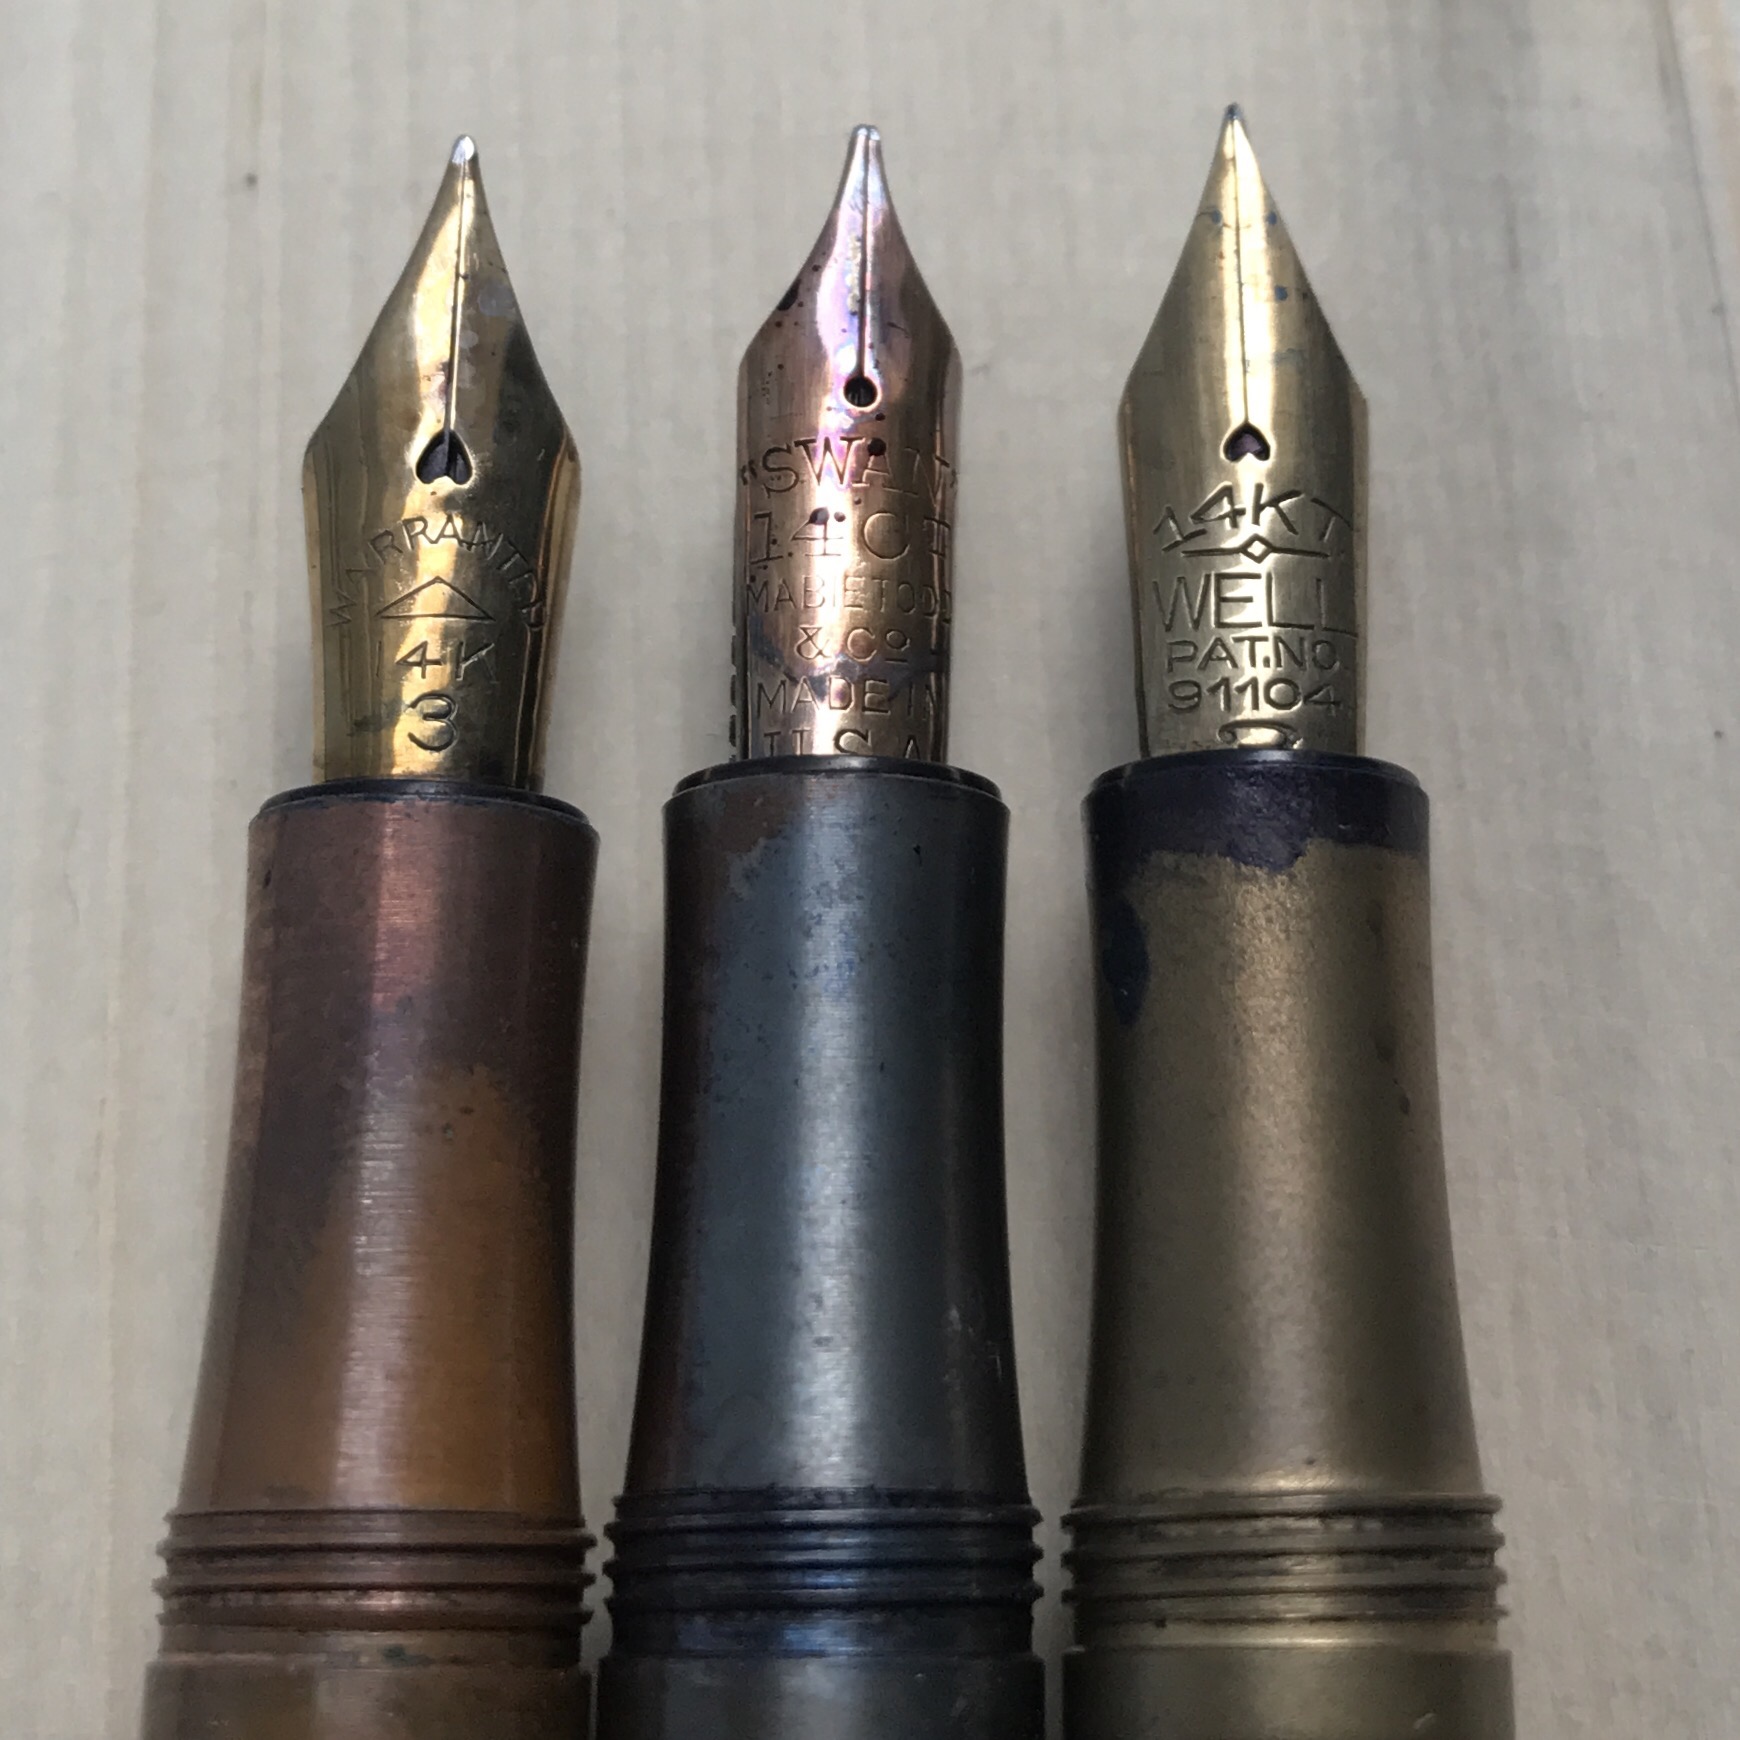 Vintage nibs in Kaweco Lilliput pens